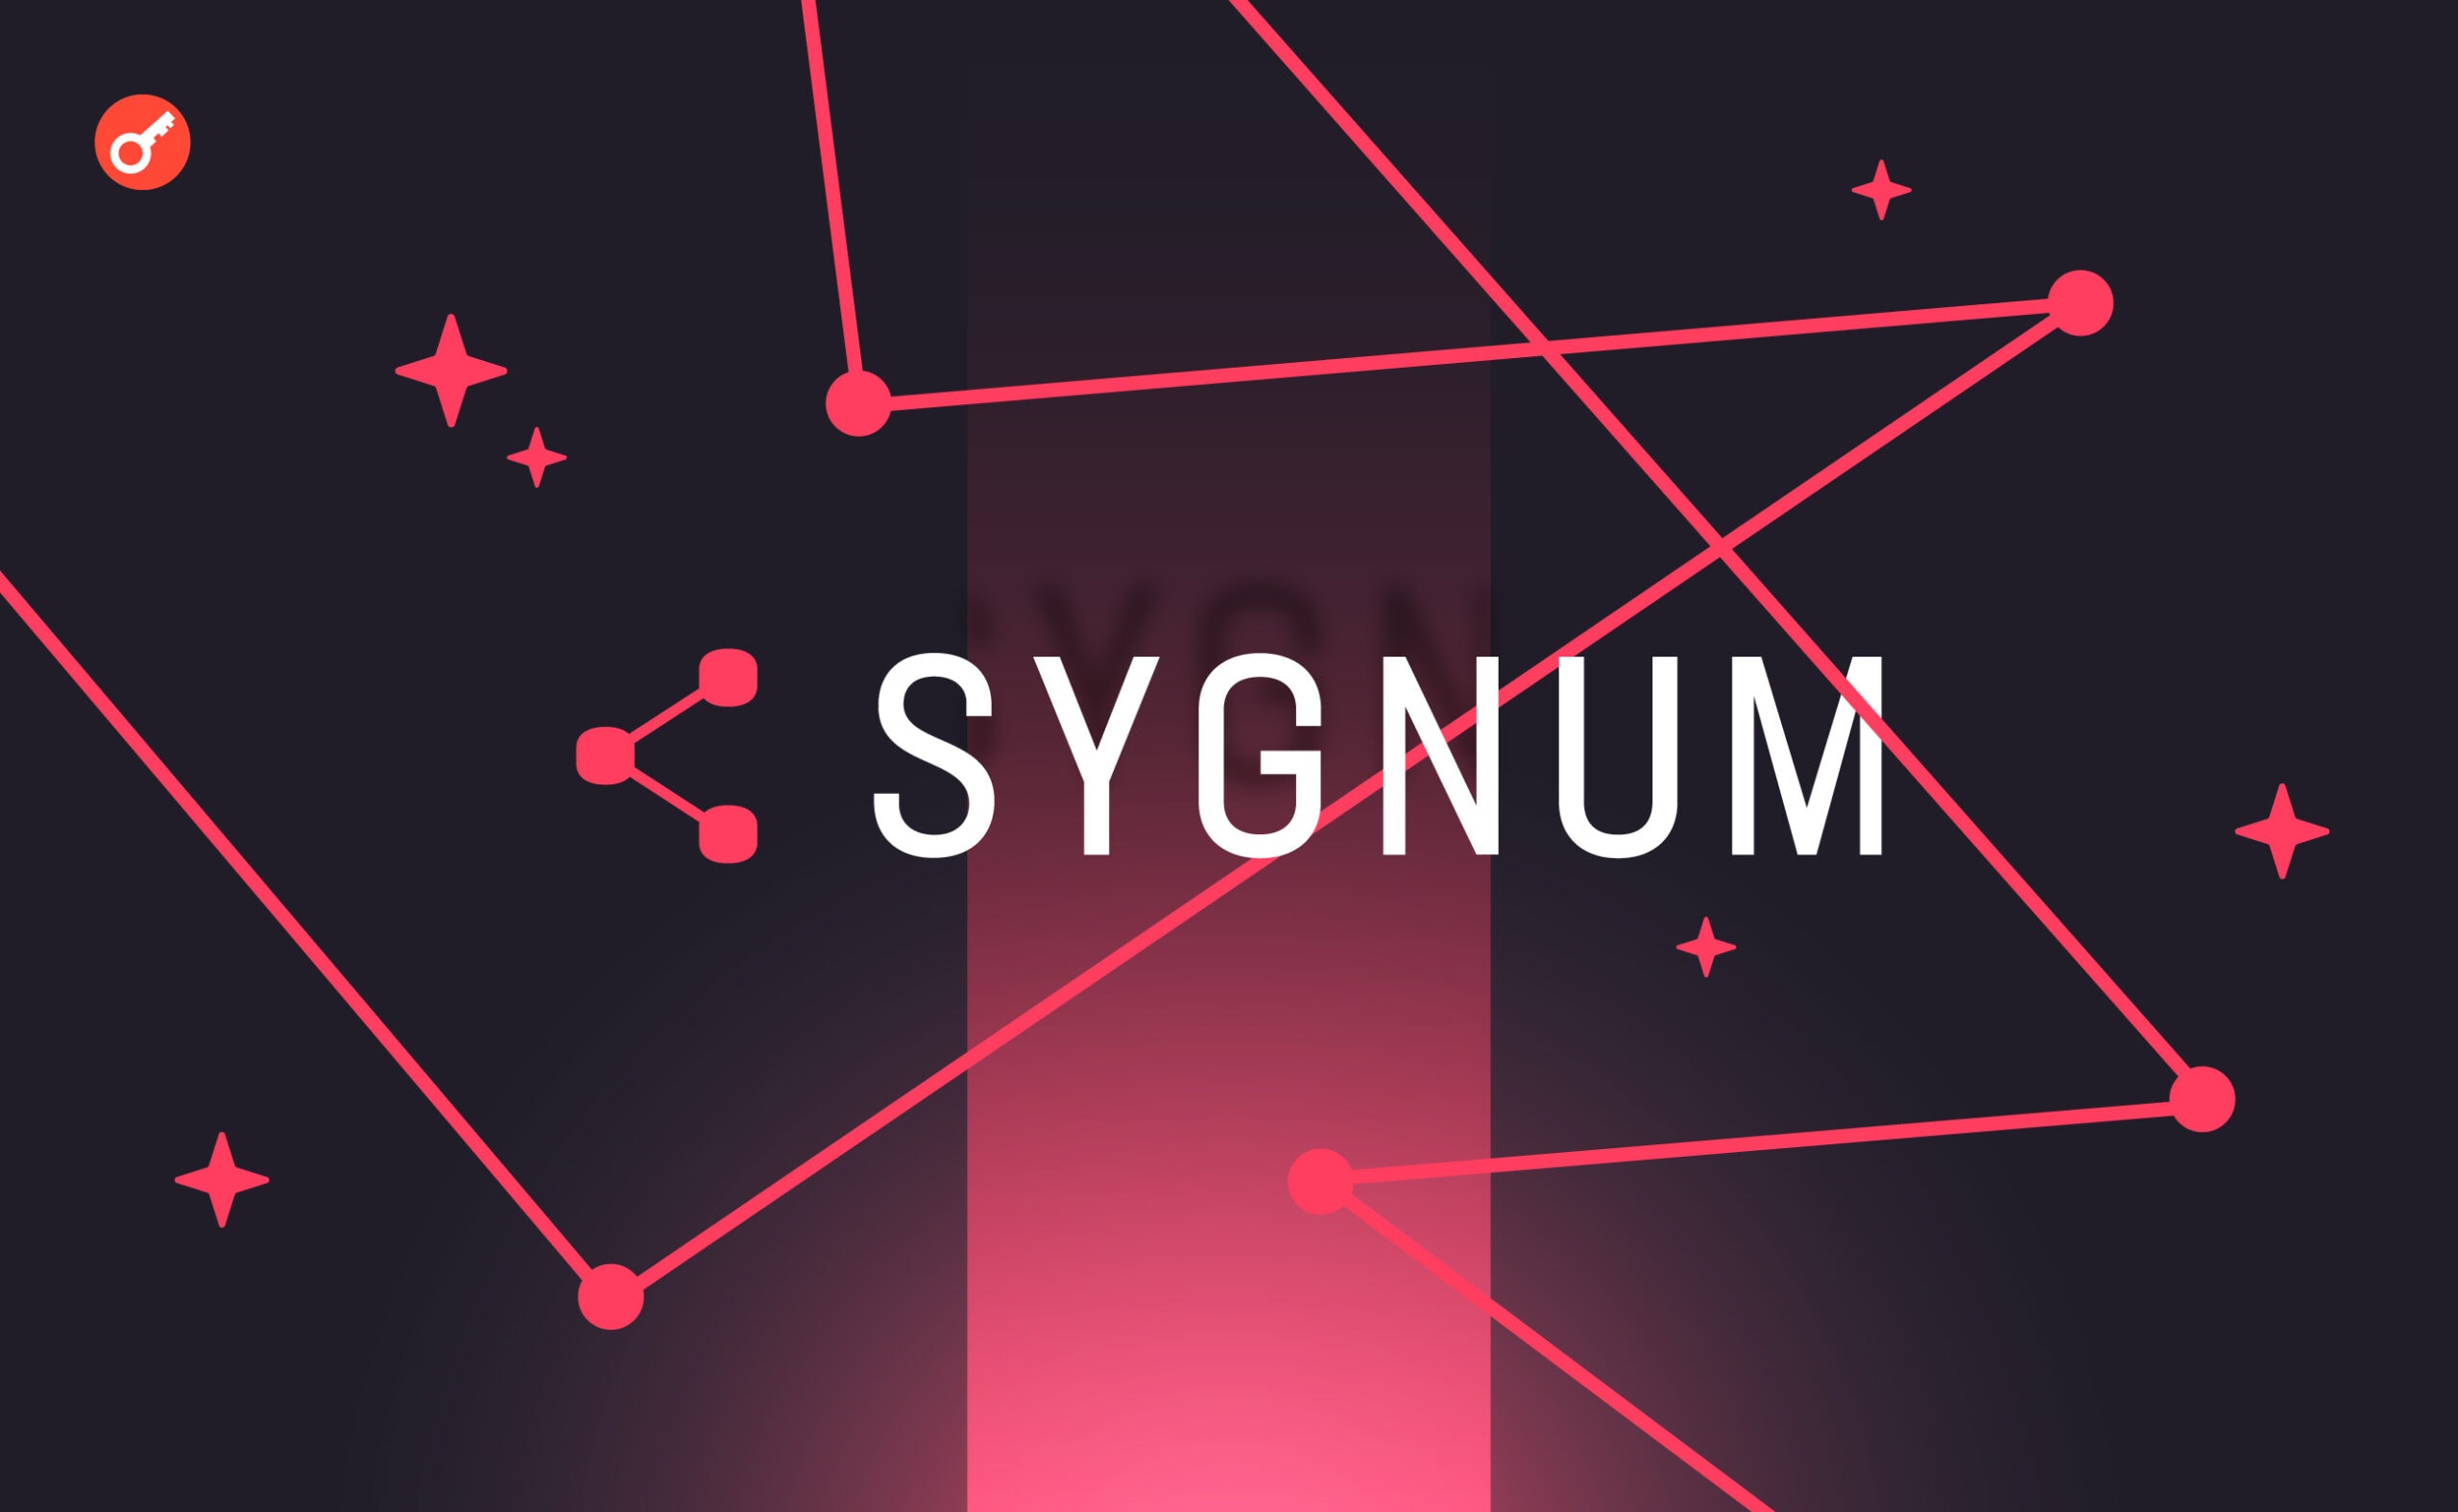 Криптобанк Sygnum привлек $40 млн и приблизился к статусу единорога. Заглавный коллаж новости.